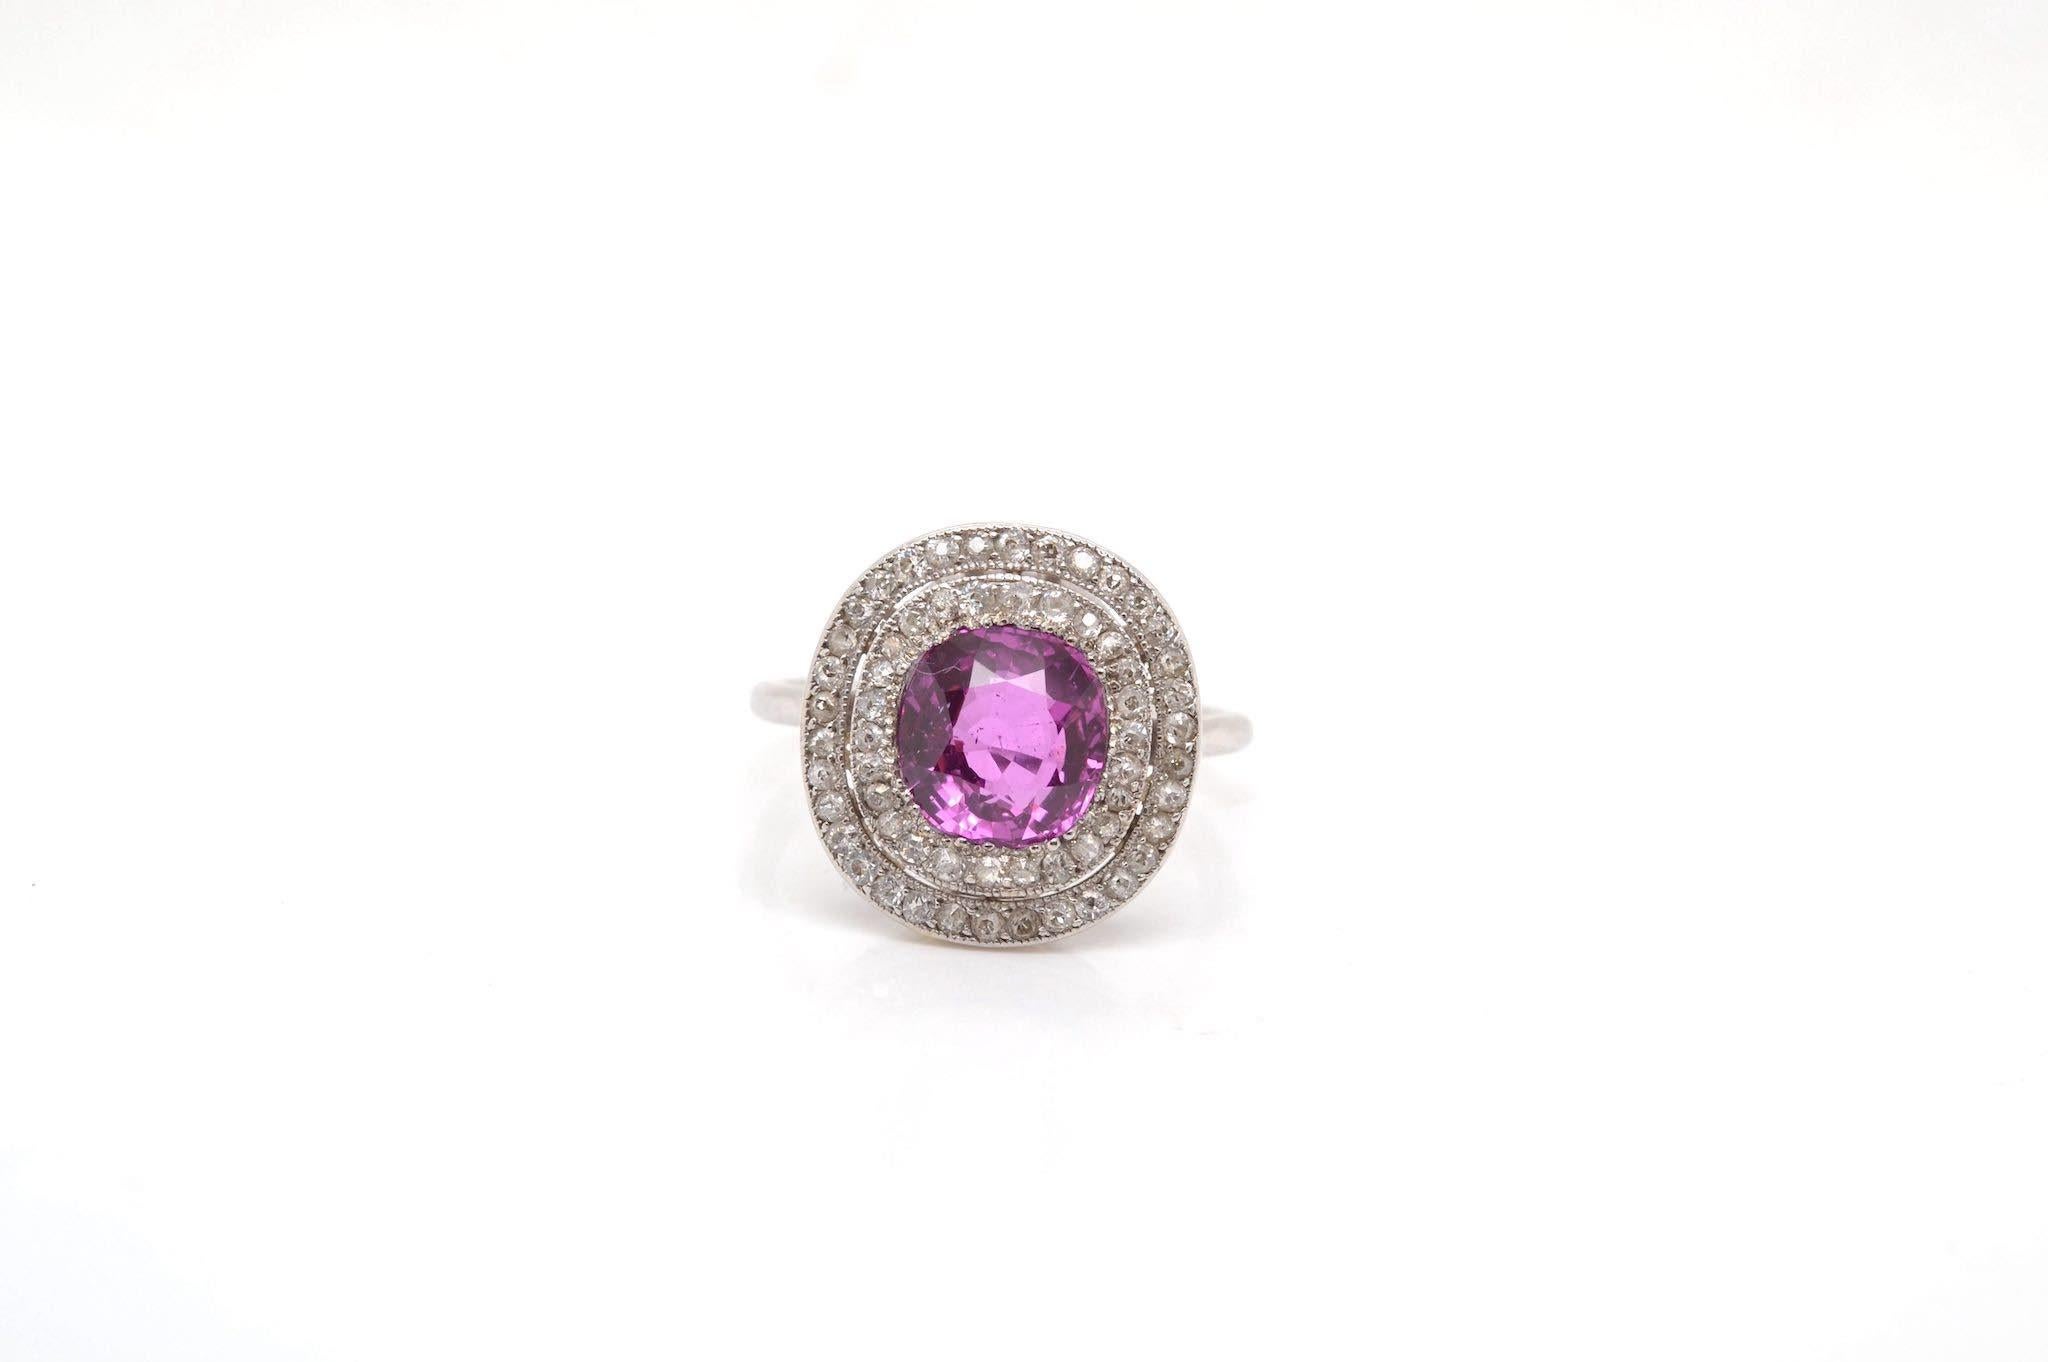 Pierres : Saphir rose de Ceylan, poids : 2.67cts et diamants de taille ancienne, poids : 0.70ct
Matériau : Platine
Dimensions : 1,7 cm x 1,5 cm : 1,7cm x 1,5cm
Poids : 5,8 g
Taille : 55 (taille libre)
Période : Début du 20e siècle
Certificat
Réf. :